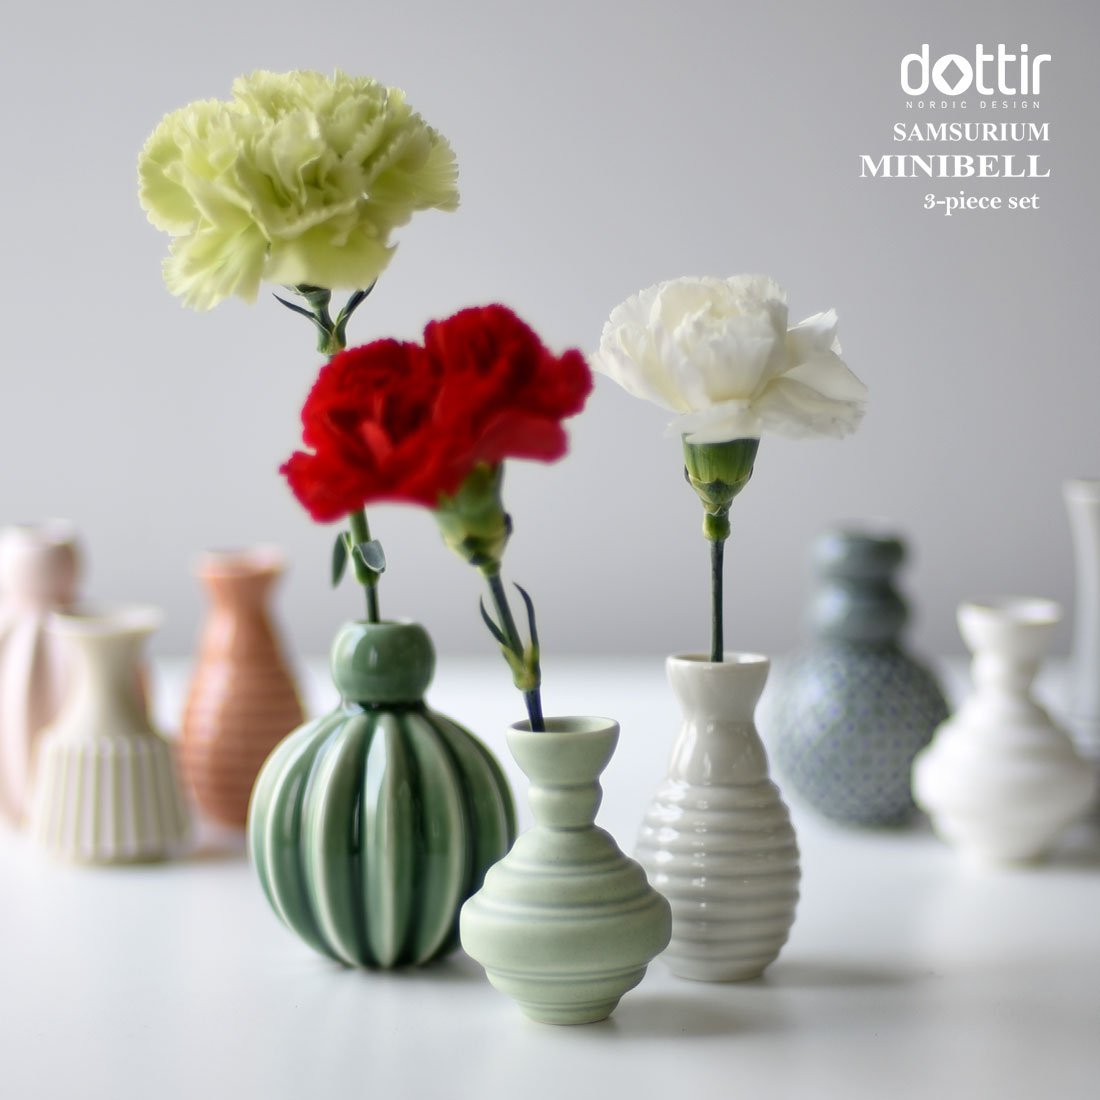 Dottir Samsurium Minibell Vase-Sæt, Green